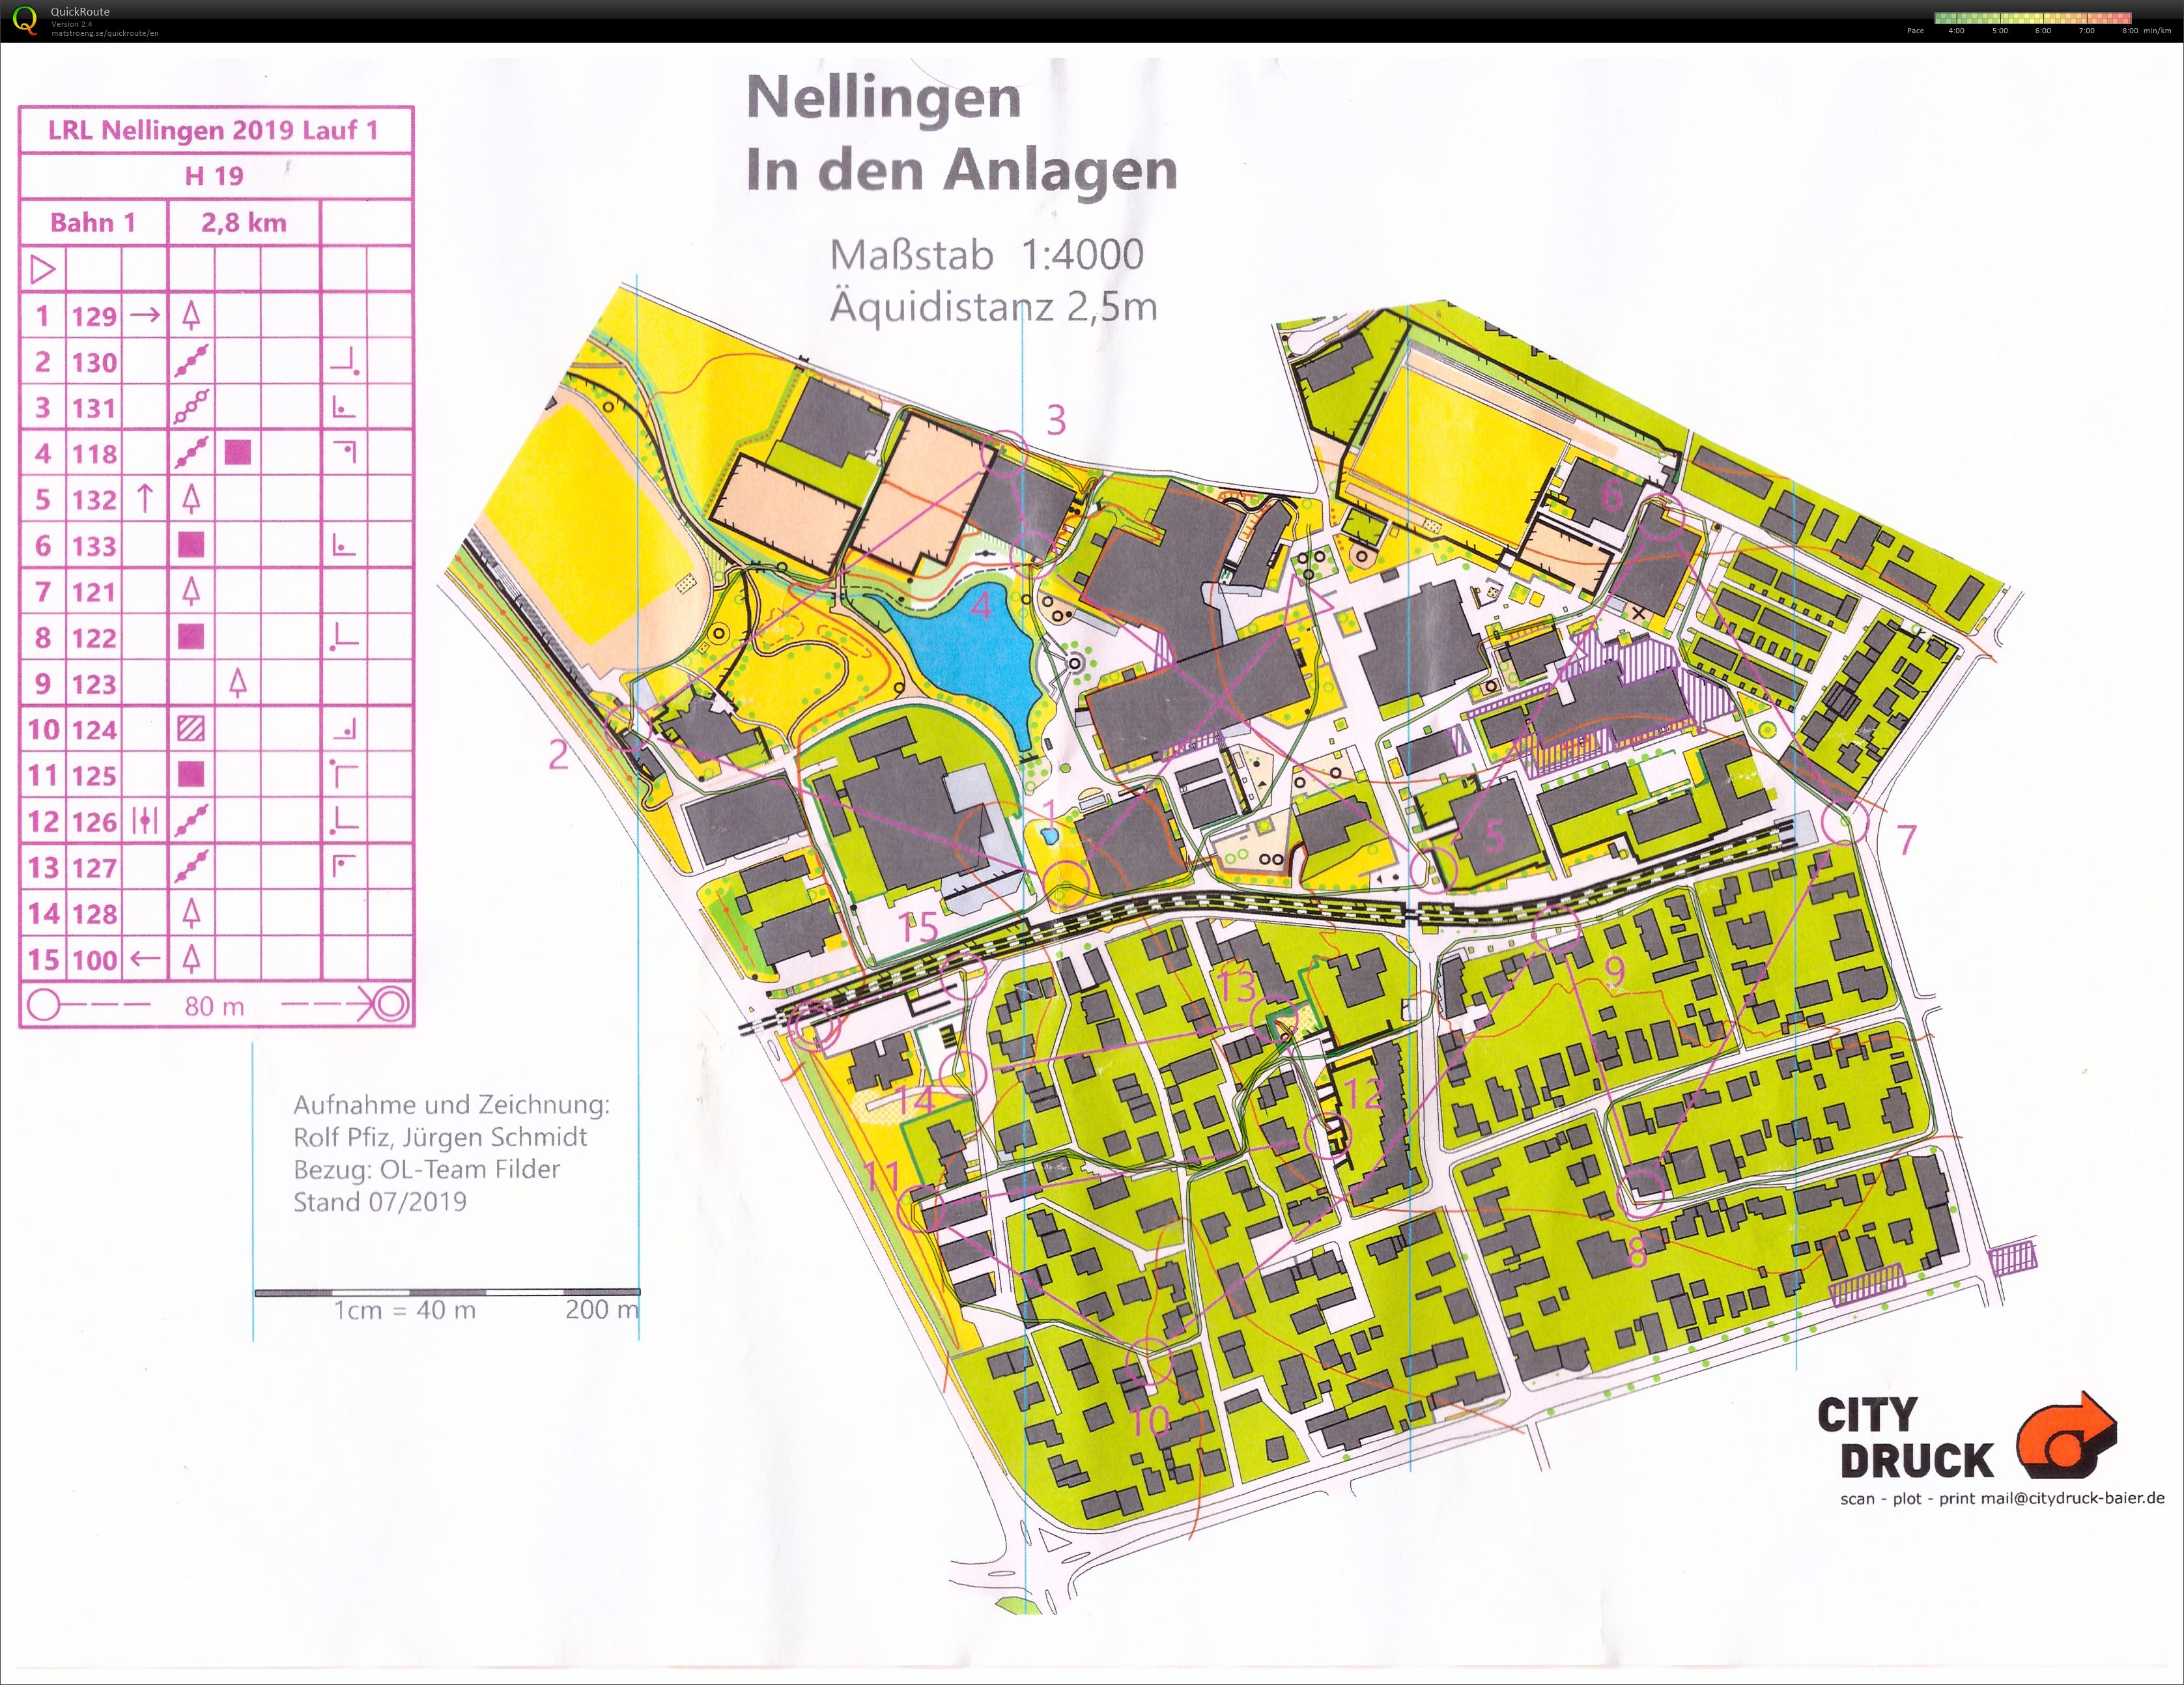 Regional Ranking Event Nellingen Race 1 (20-07-2019)